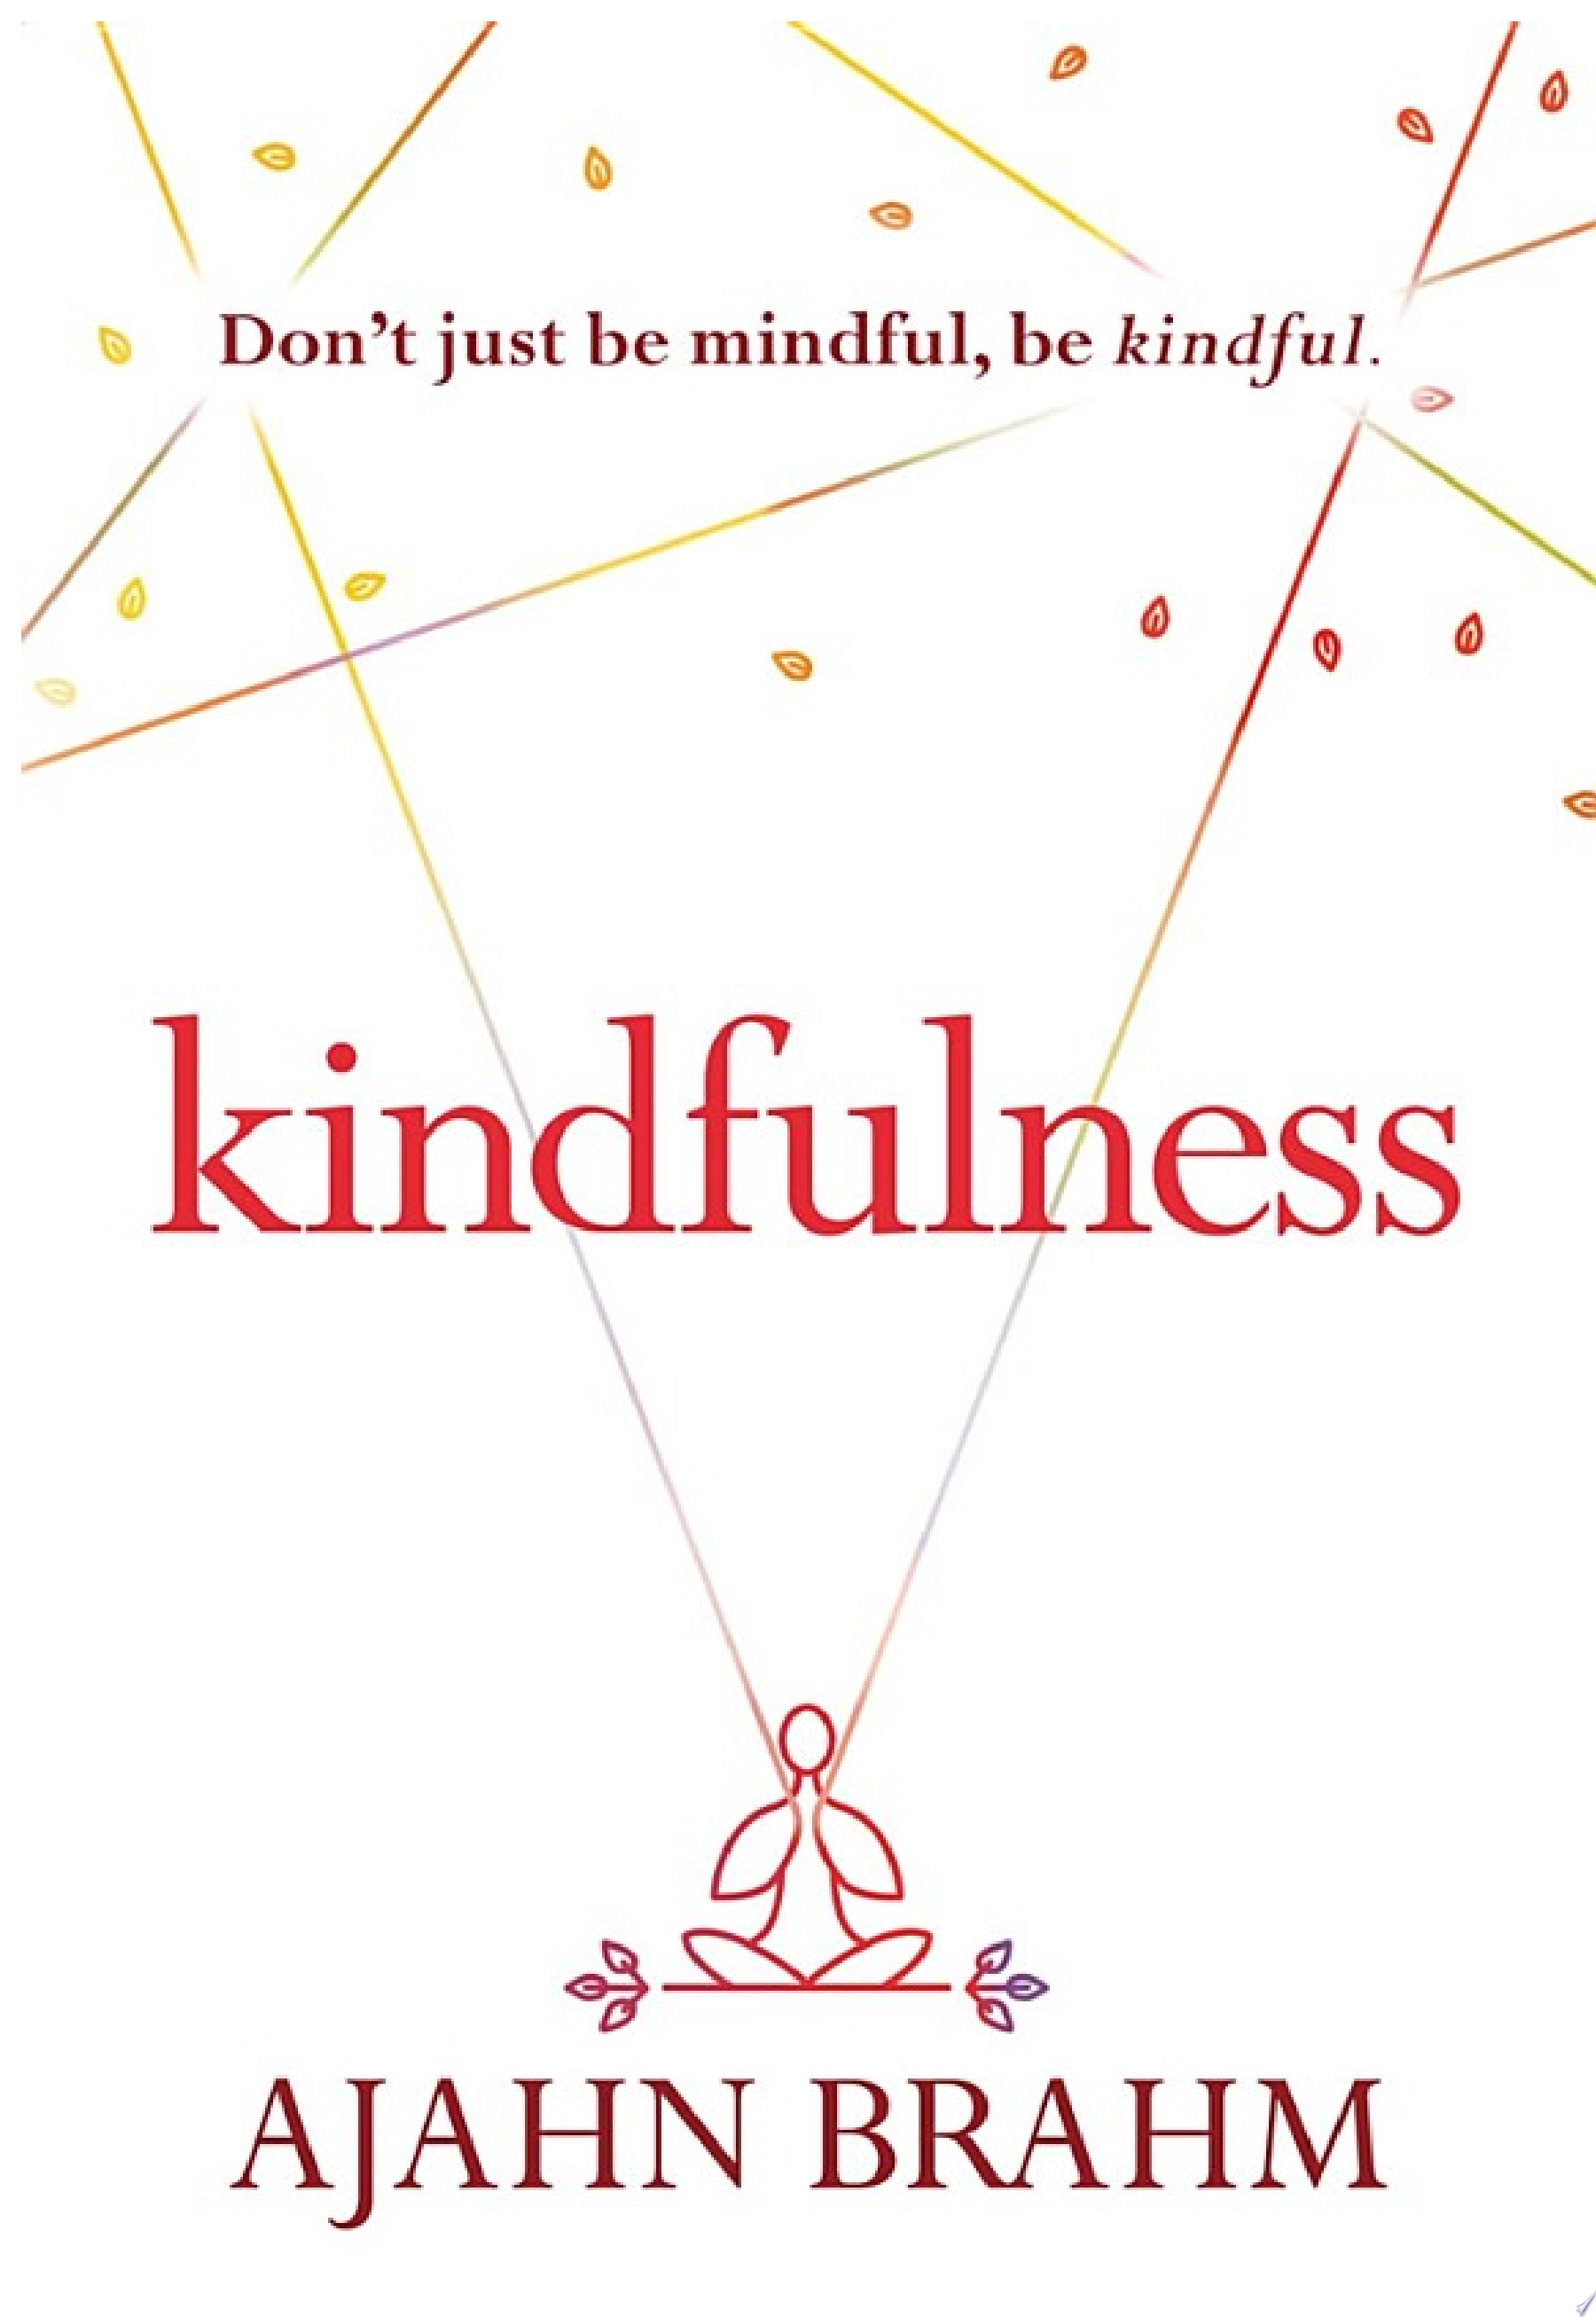 Image for "Kindfulness"